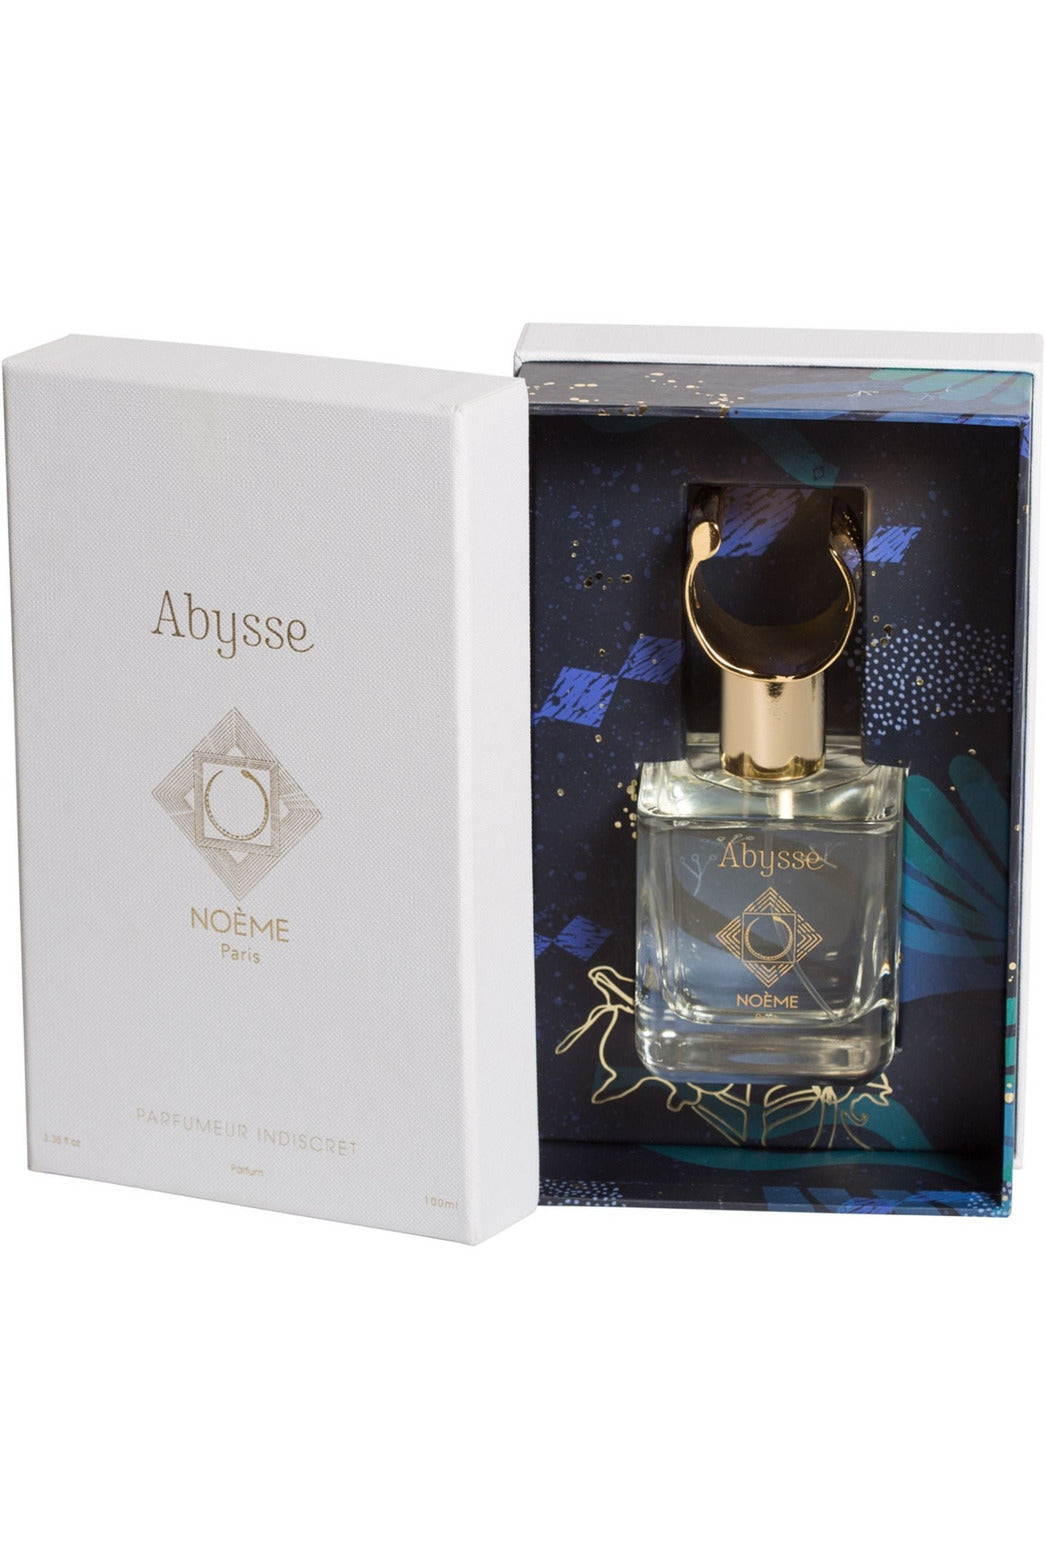 Buy Noeme Paris Abysse Parfumeur Indiscret Parfume - 100ml in Pakistan